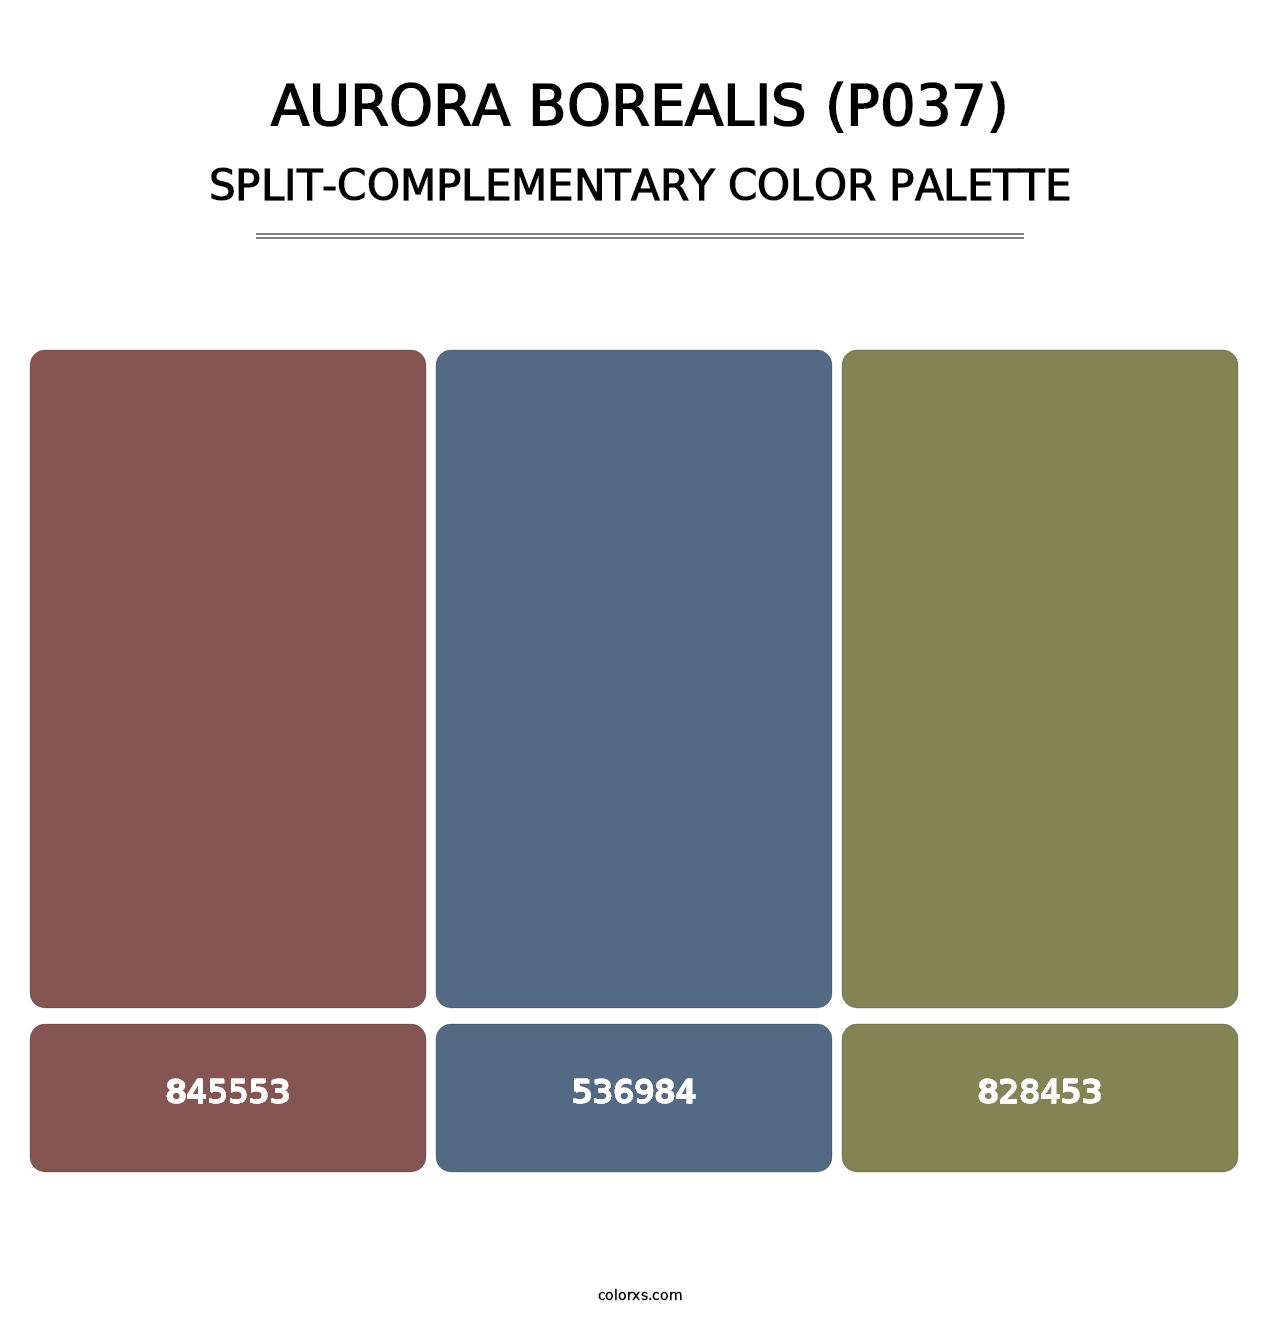 Aurora Borealis (P037) - Split-Complementary Color Palette